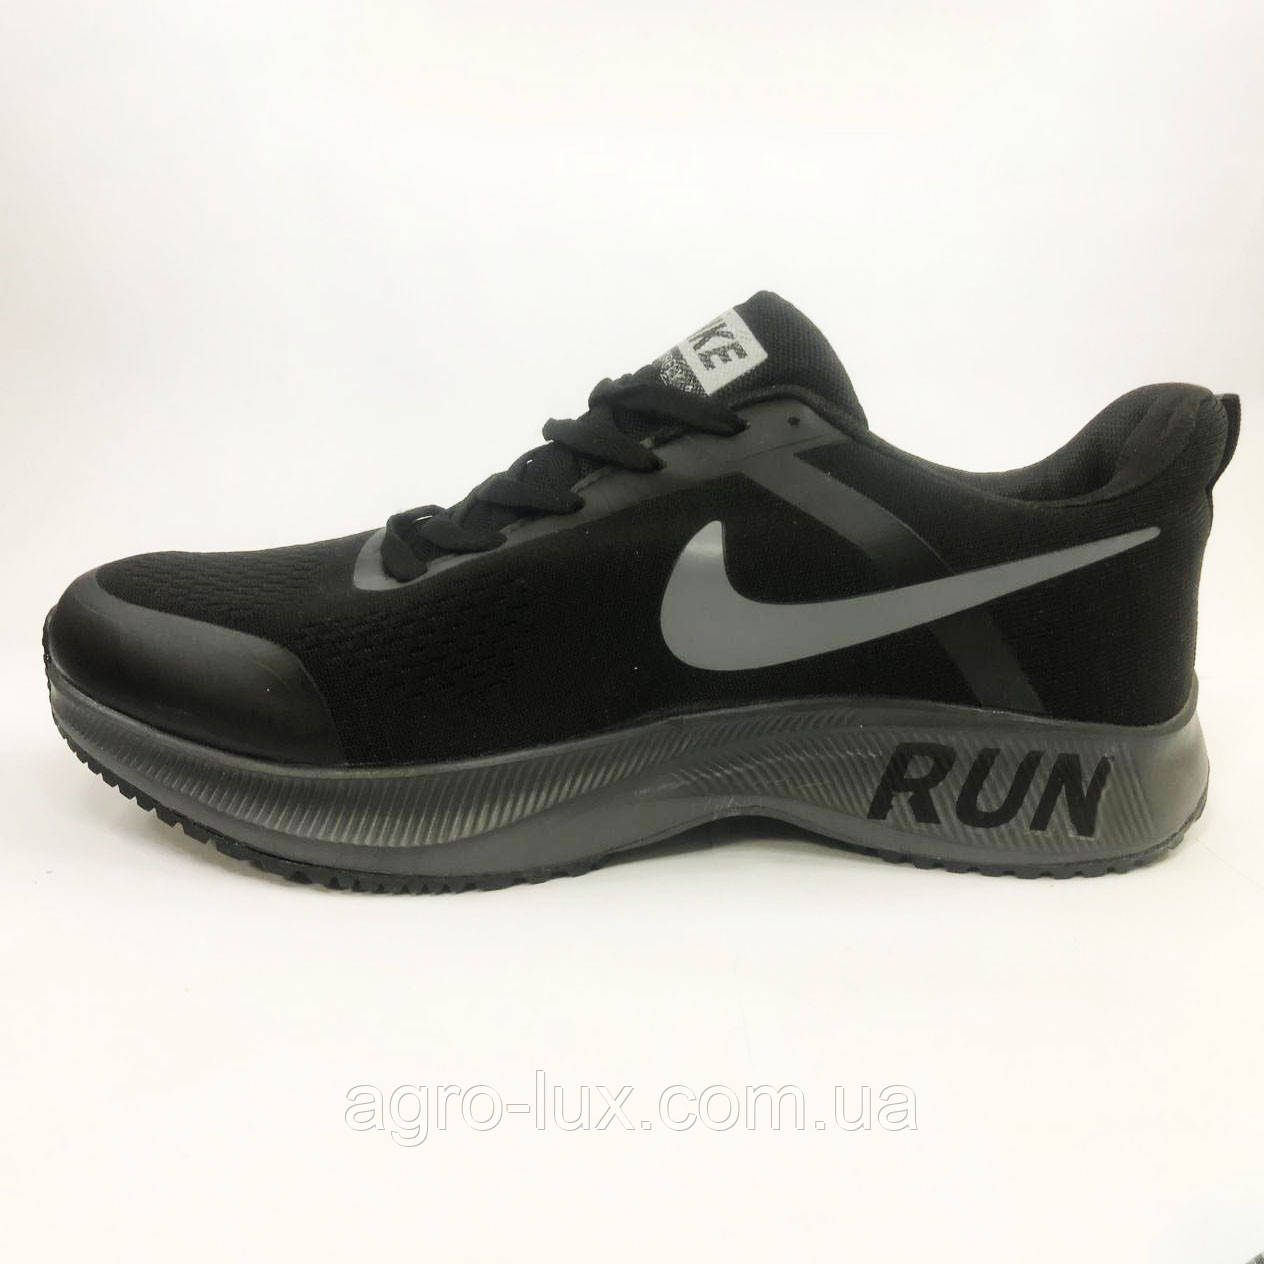 Чоловічі кросівки Nike Air Run 21655. Розмір 44, фото 1